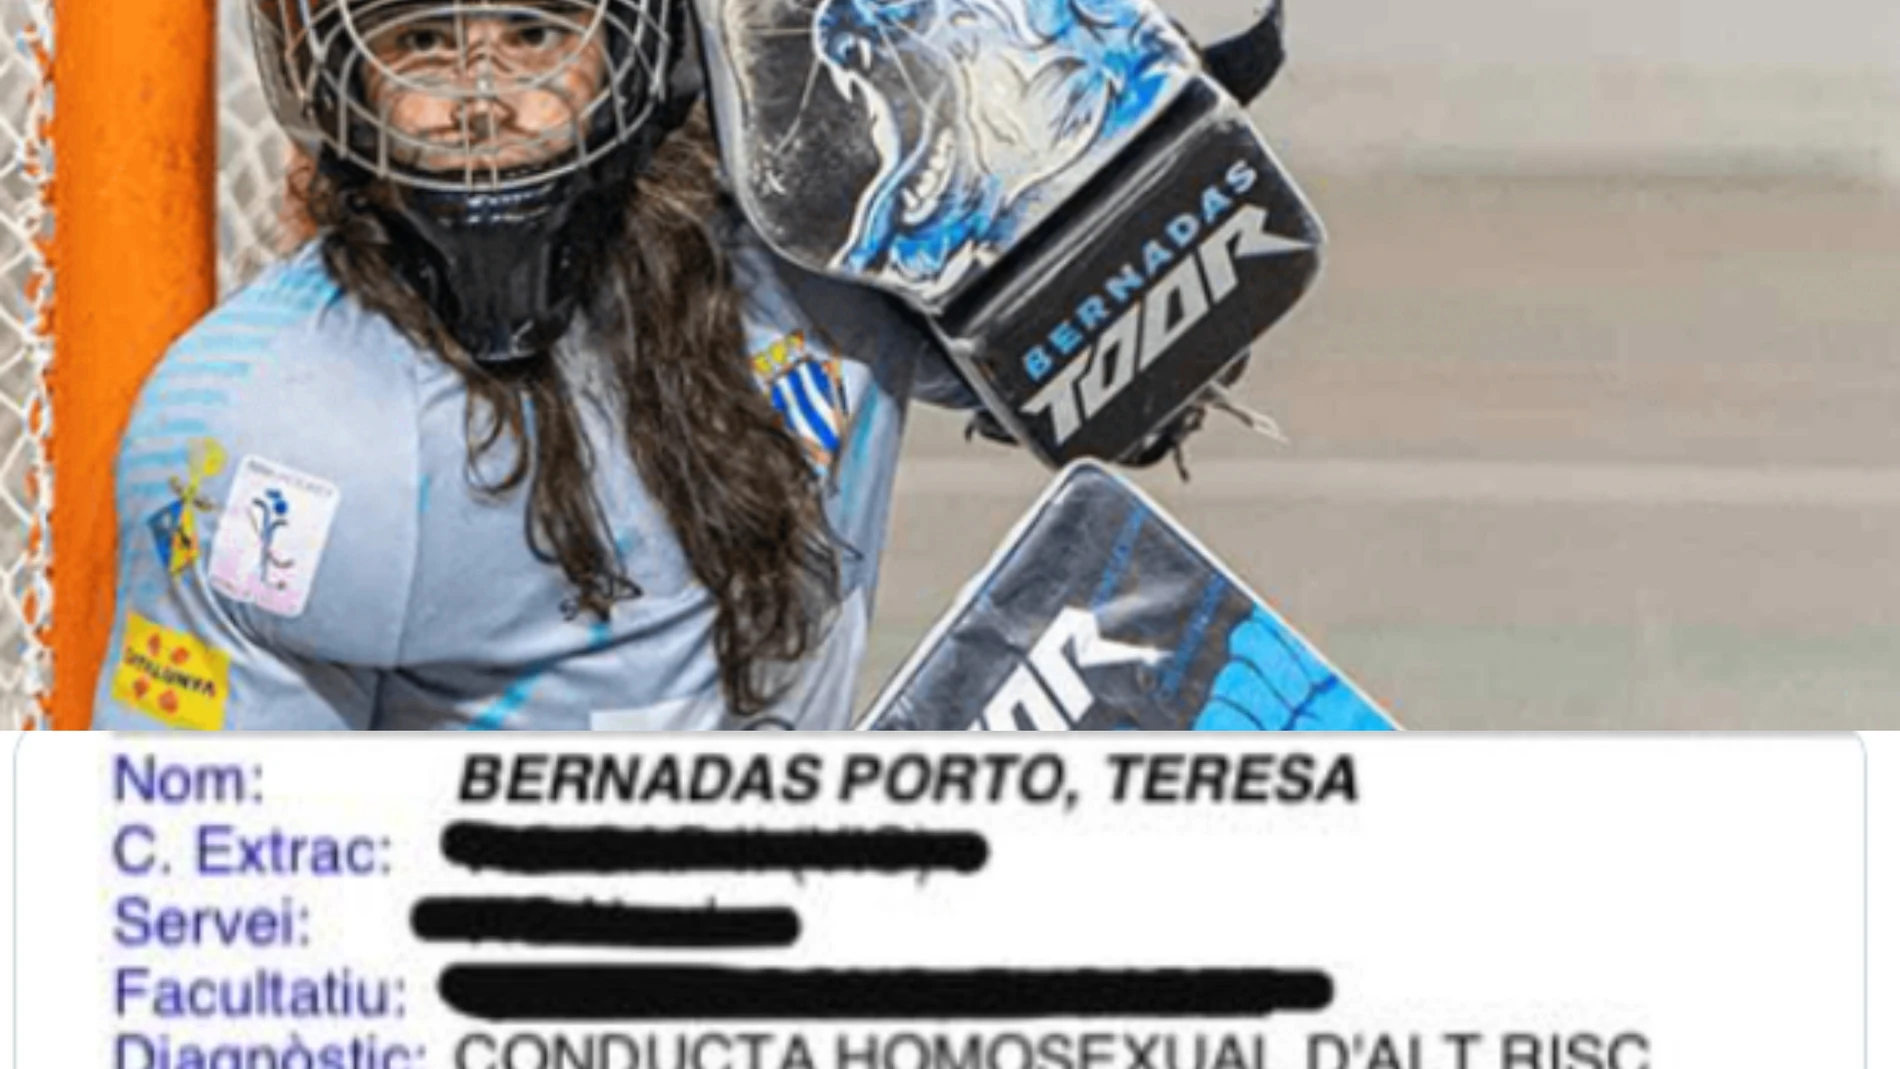 El sorprendente diagnóstico médico de Teresa Bernadas